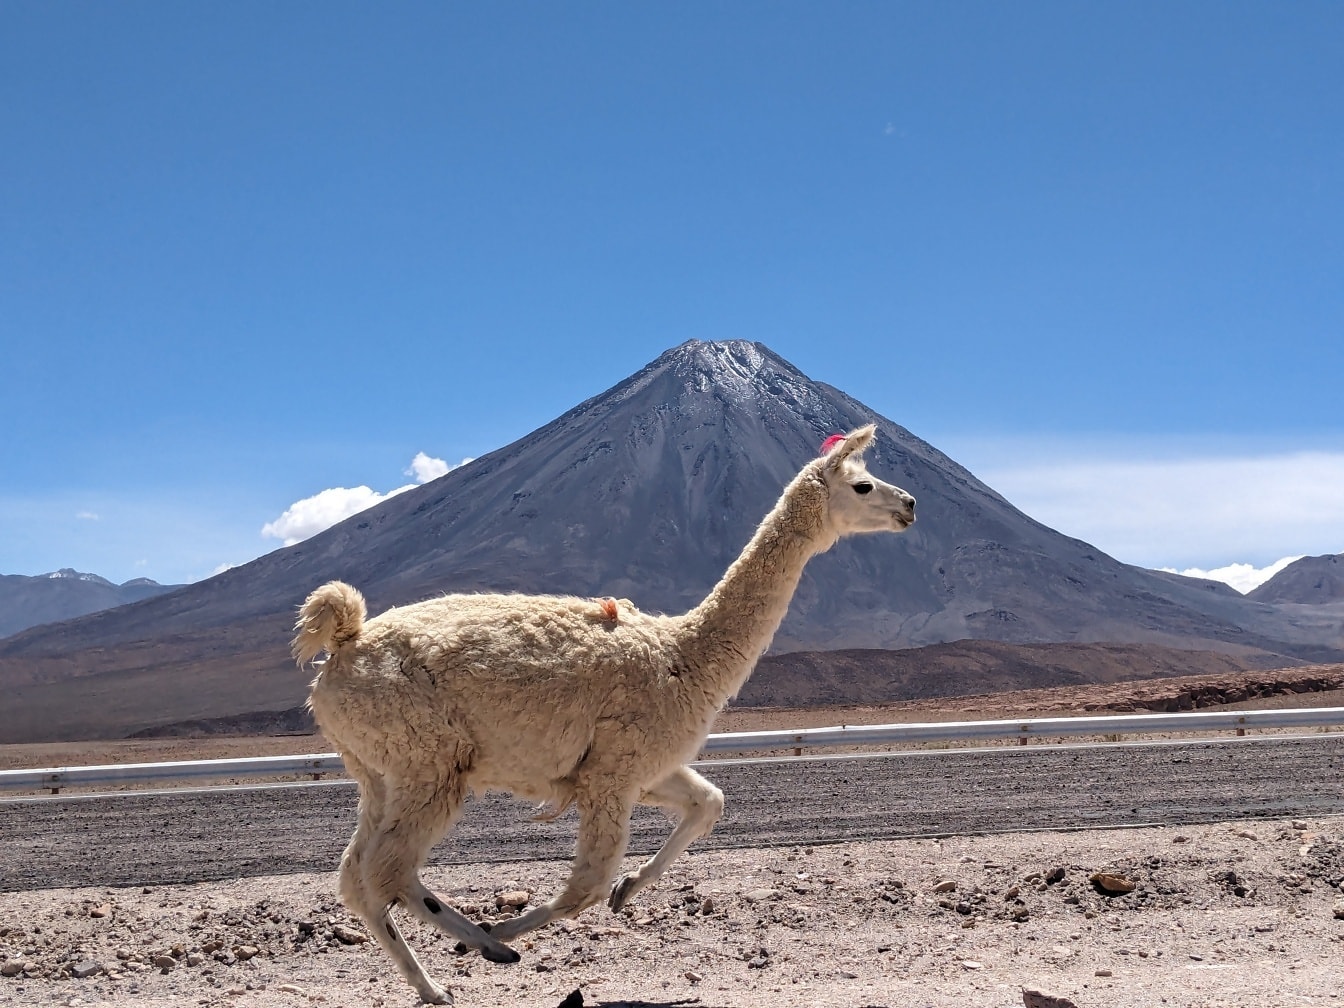 lhama (Lama glama) um camelídeo sul-americano domesticado que corre no deserto boliviano